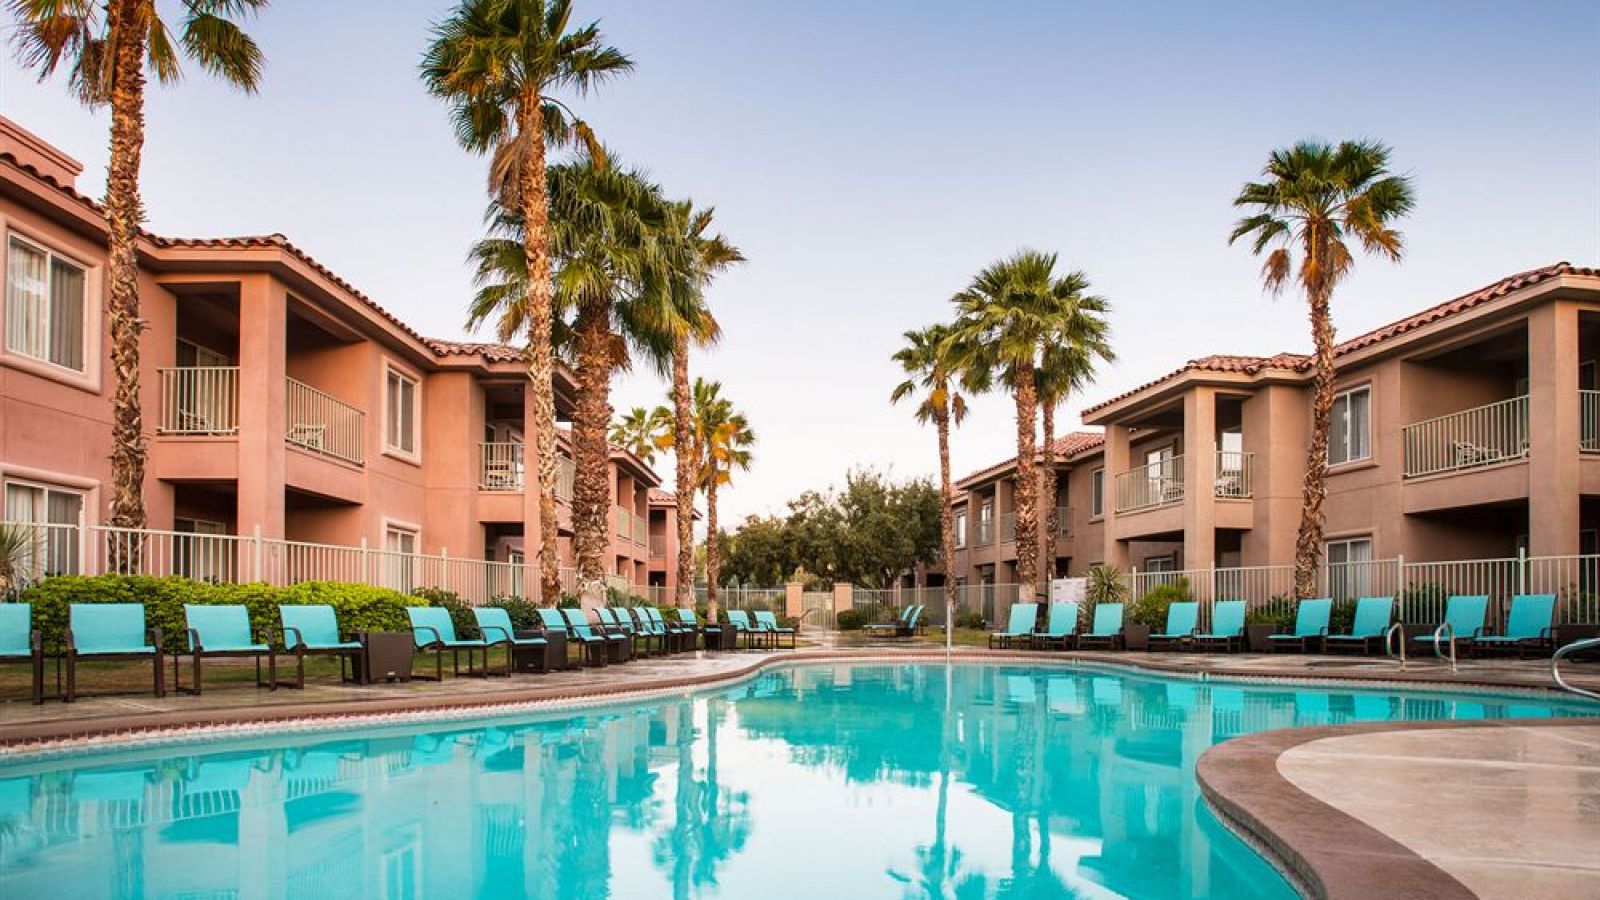 Residence Inn Palm Desert - Palm Springs golf packages